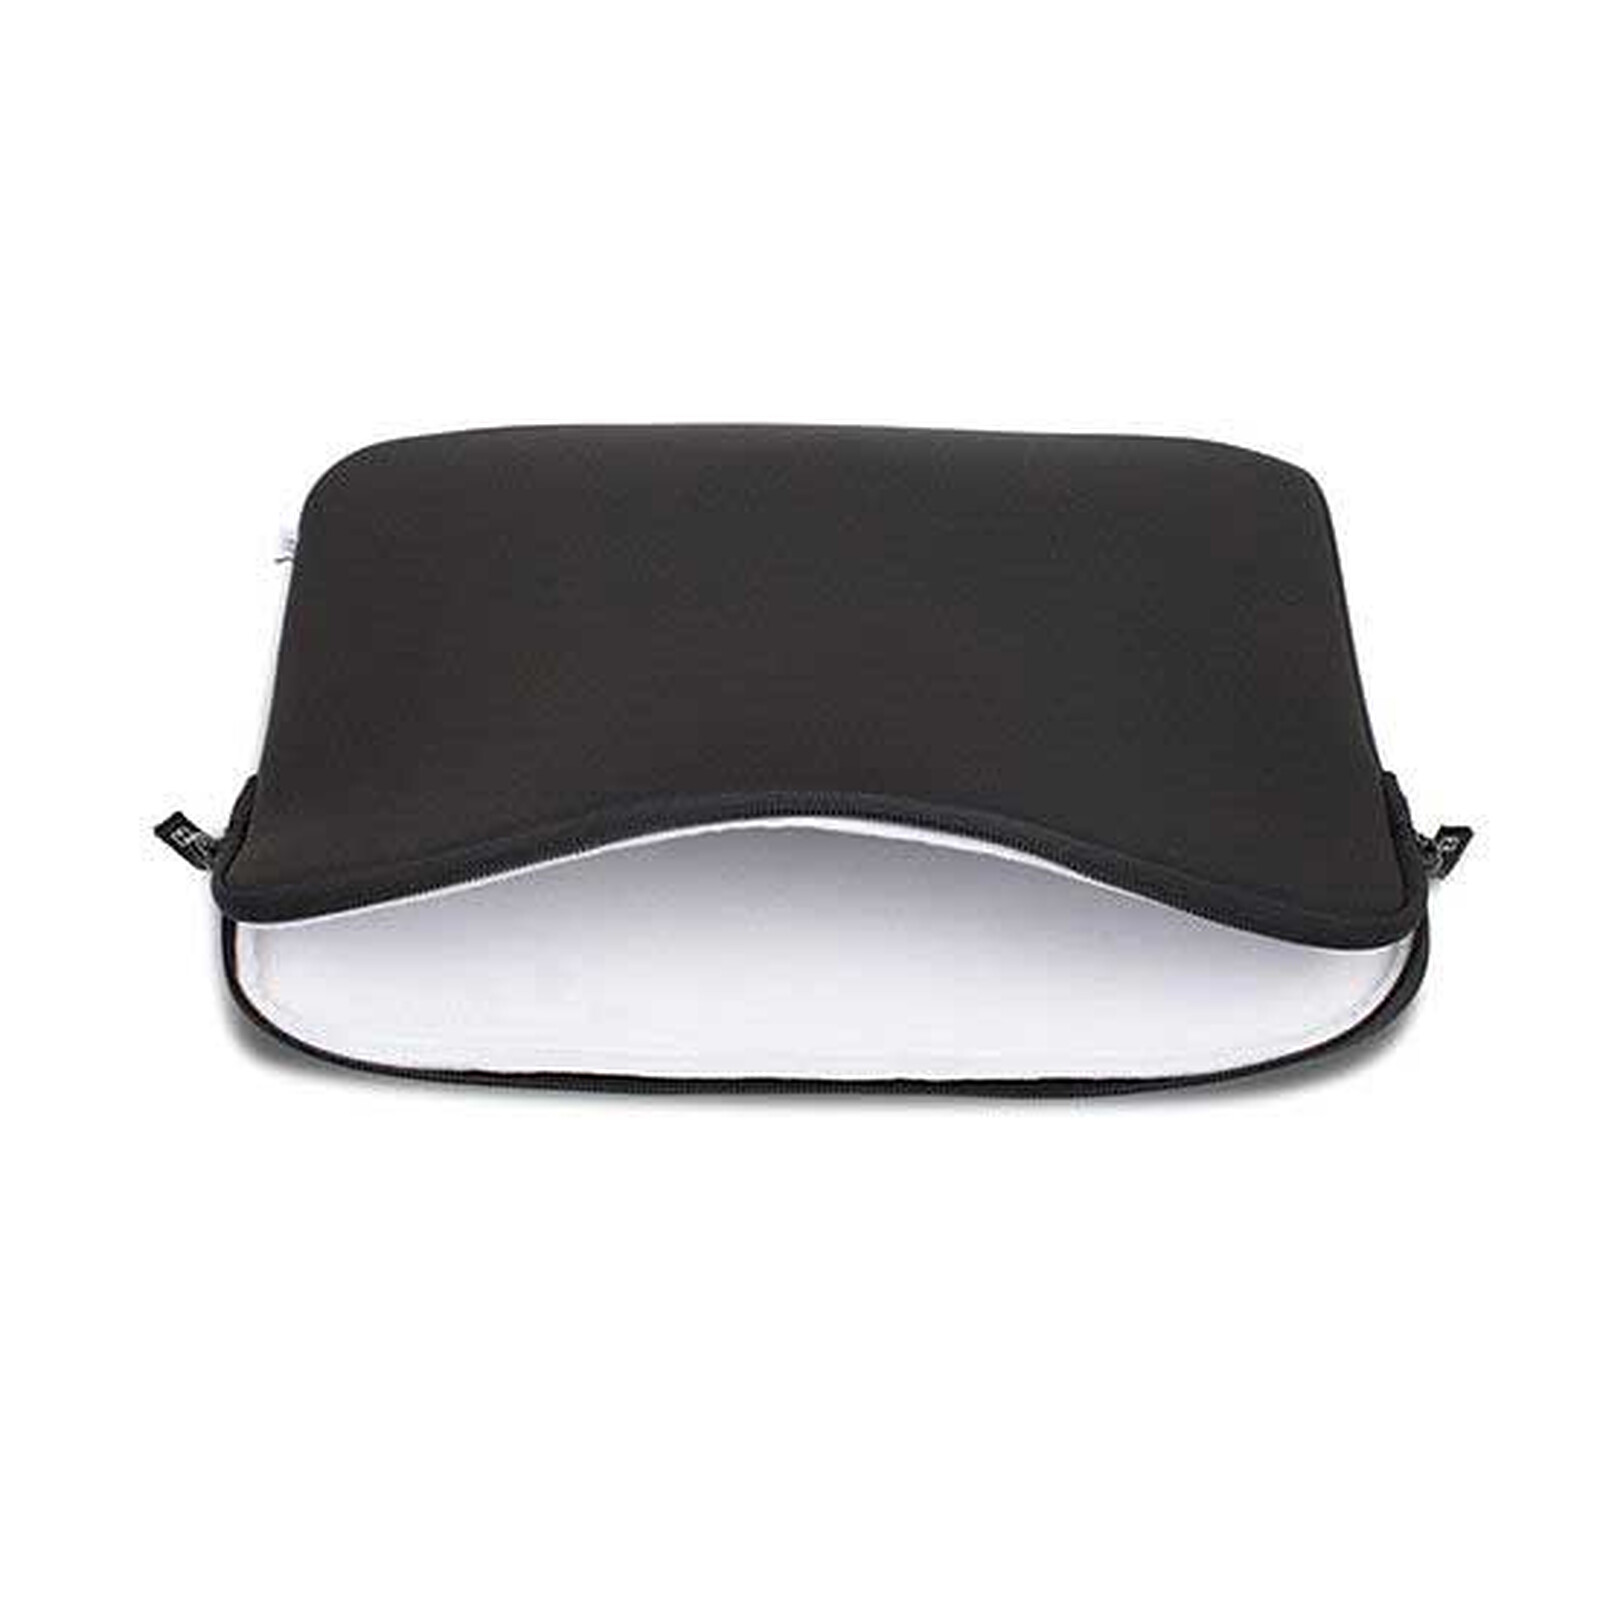 Basics ²Life Black/White Sleeve for MacBook Pro 14